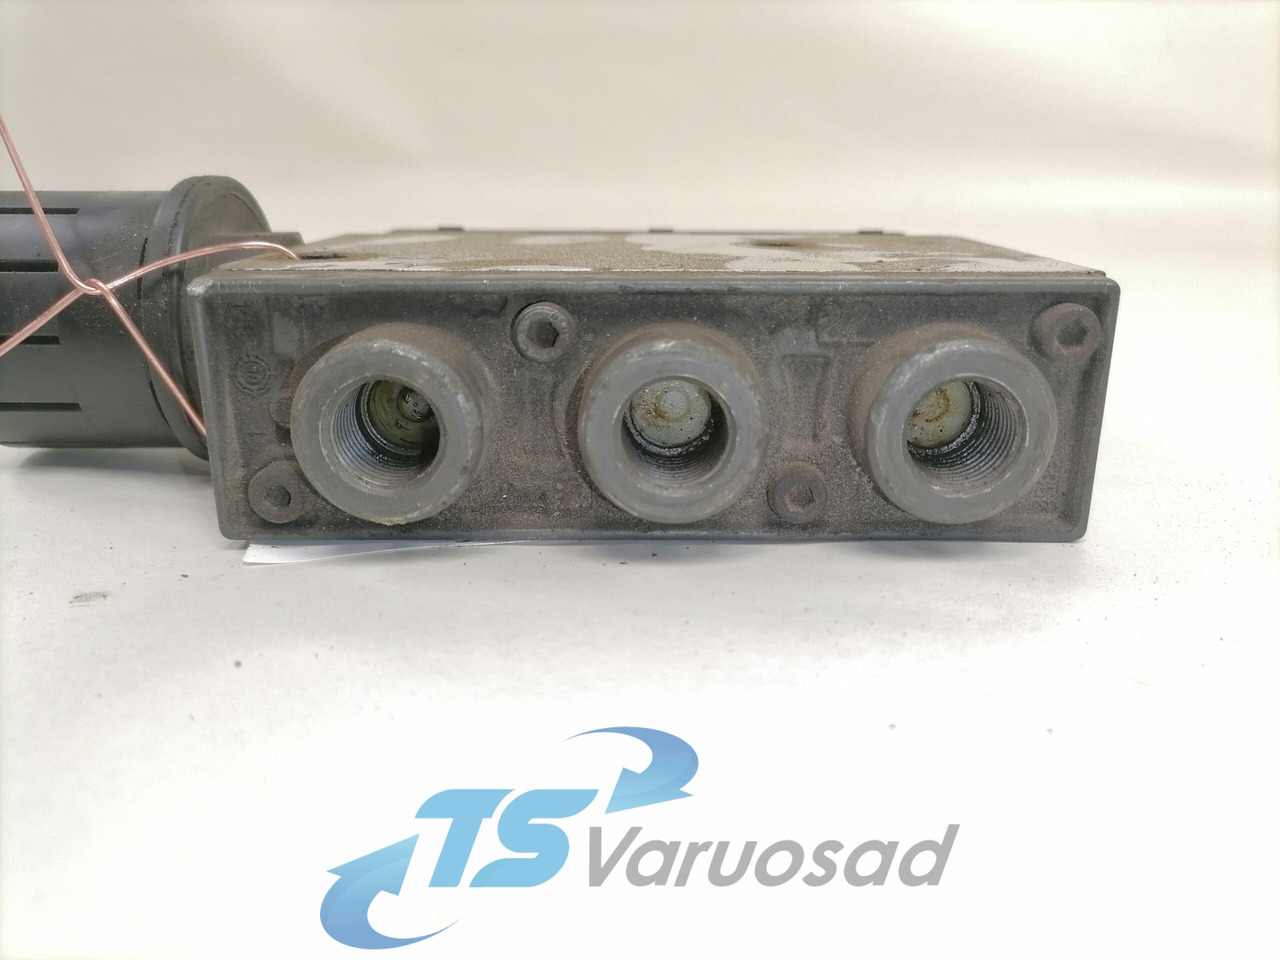 Bremsventil für LKW Volvo Air suspension control valve, ECAS 3944716: das Bild 2